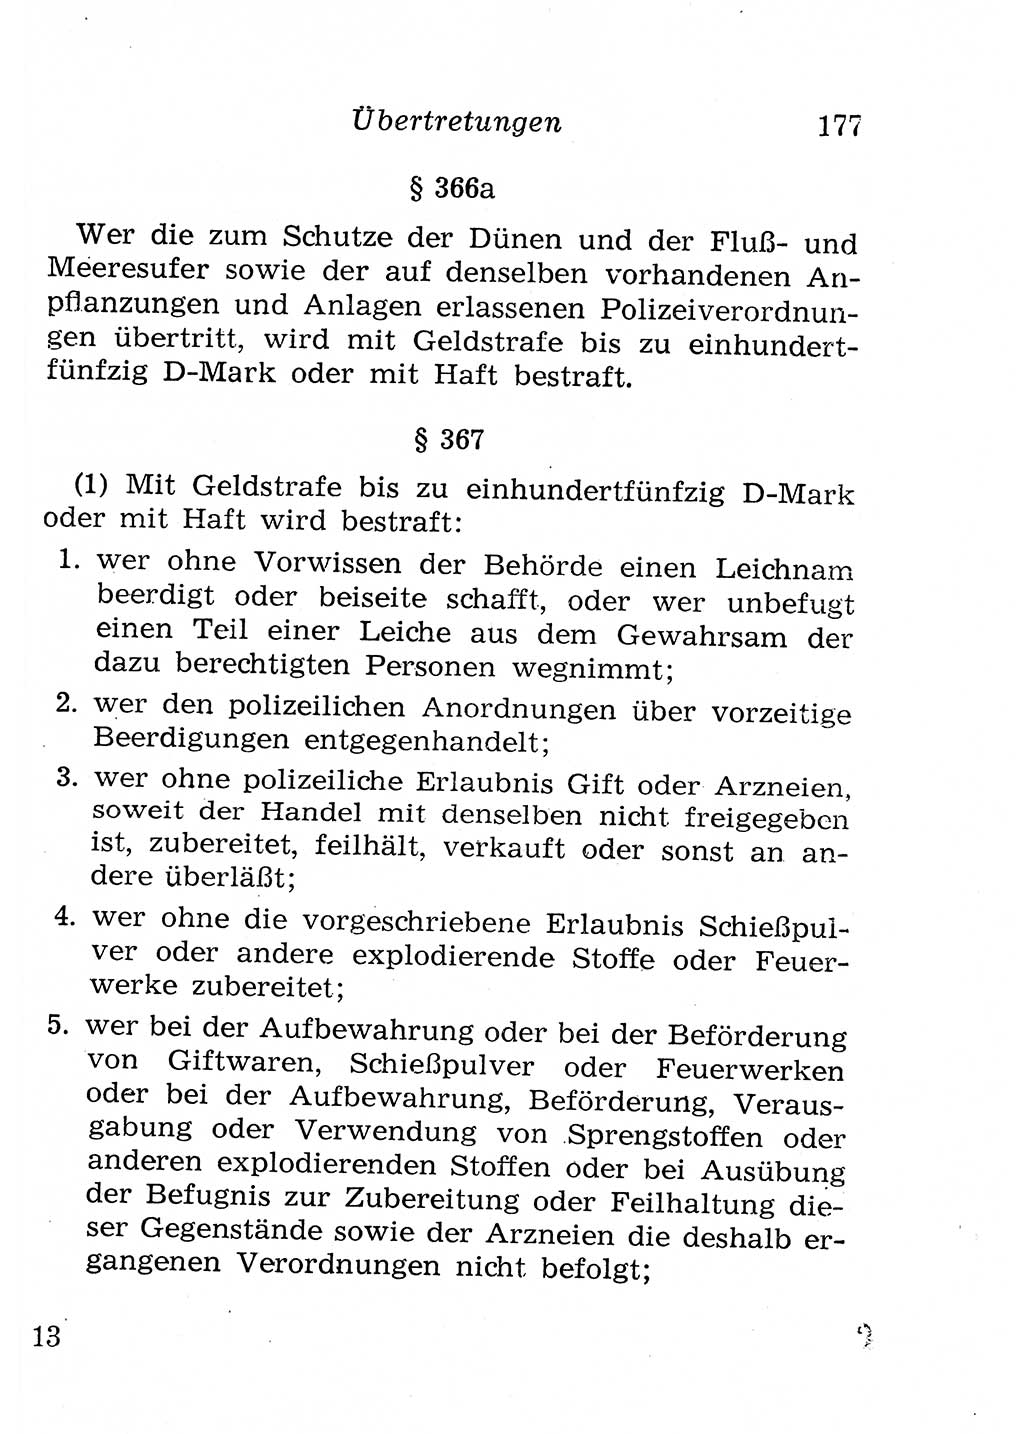 Strafgesetzbuch (StGB) und andere Strafgesetze [Deutsche Demokratische Republik (DDR)] 1958, Seite 177 (StGB Strafges. DDR 1958, S. 177)